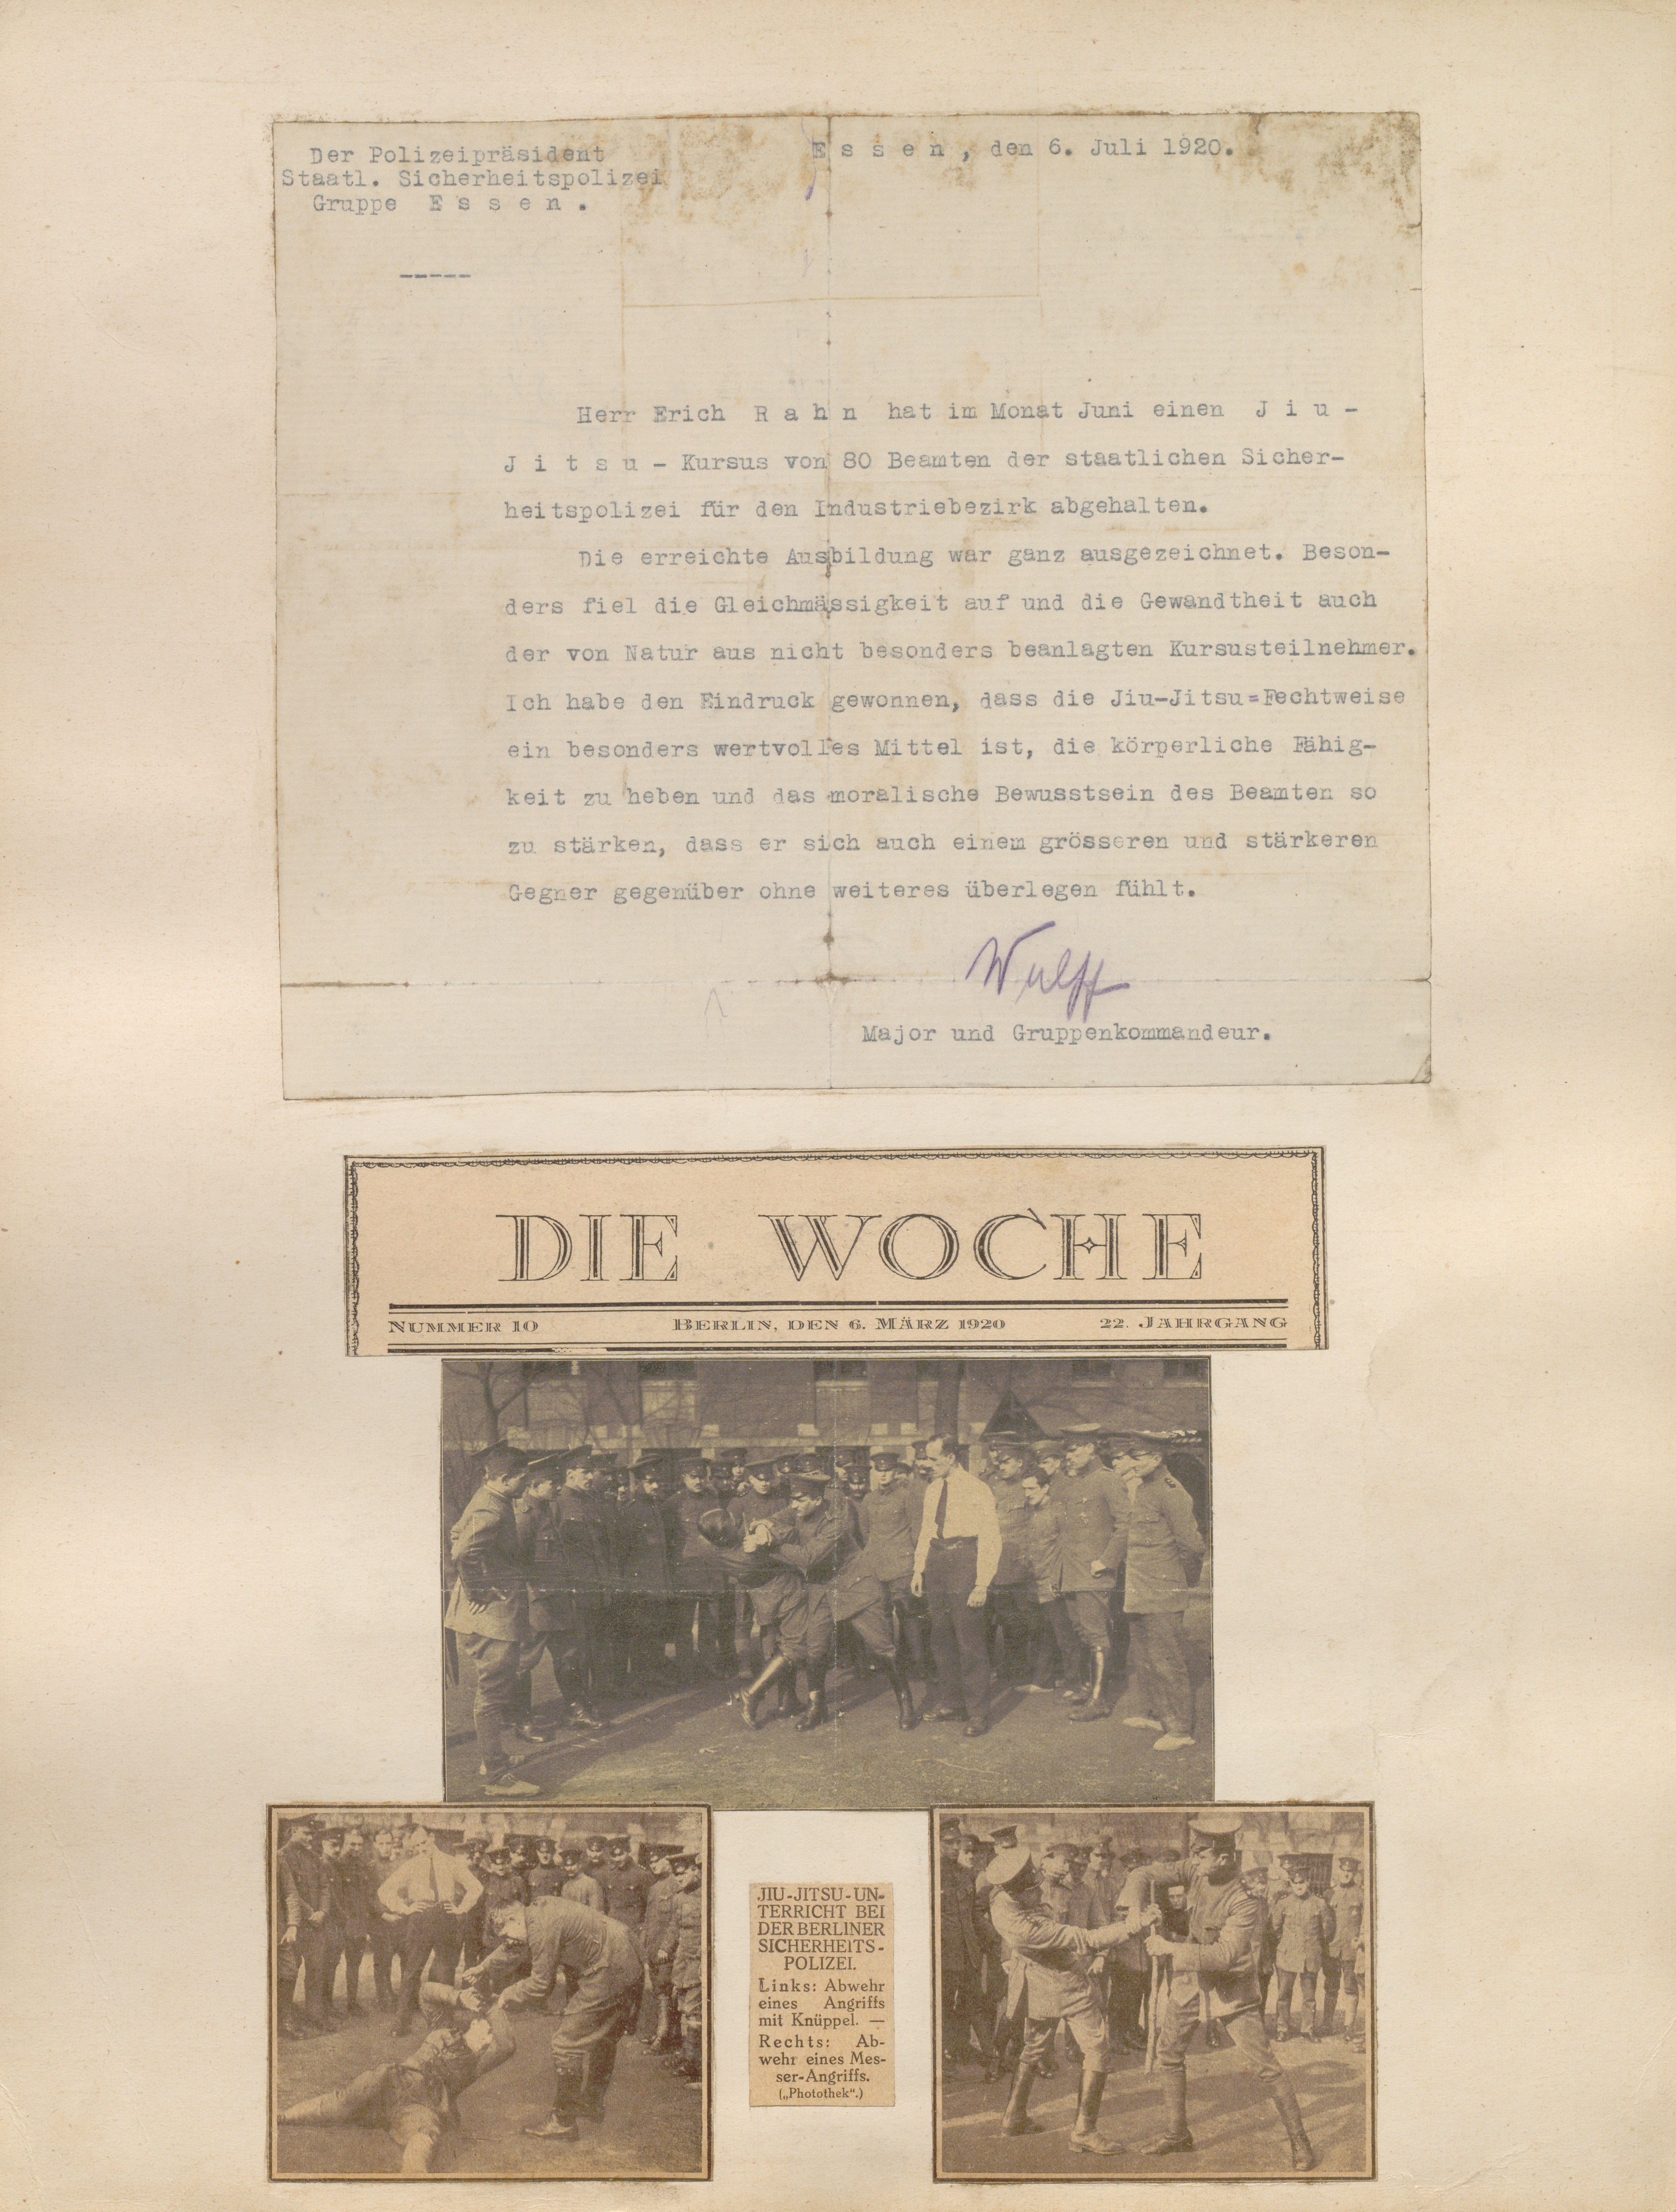 Album Erich Rahn; Schreiben des Essener Polizeipräsidenten (Sportmuseum Berlin CC0)